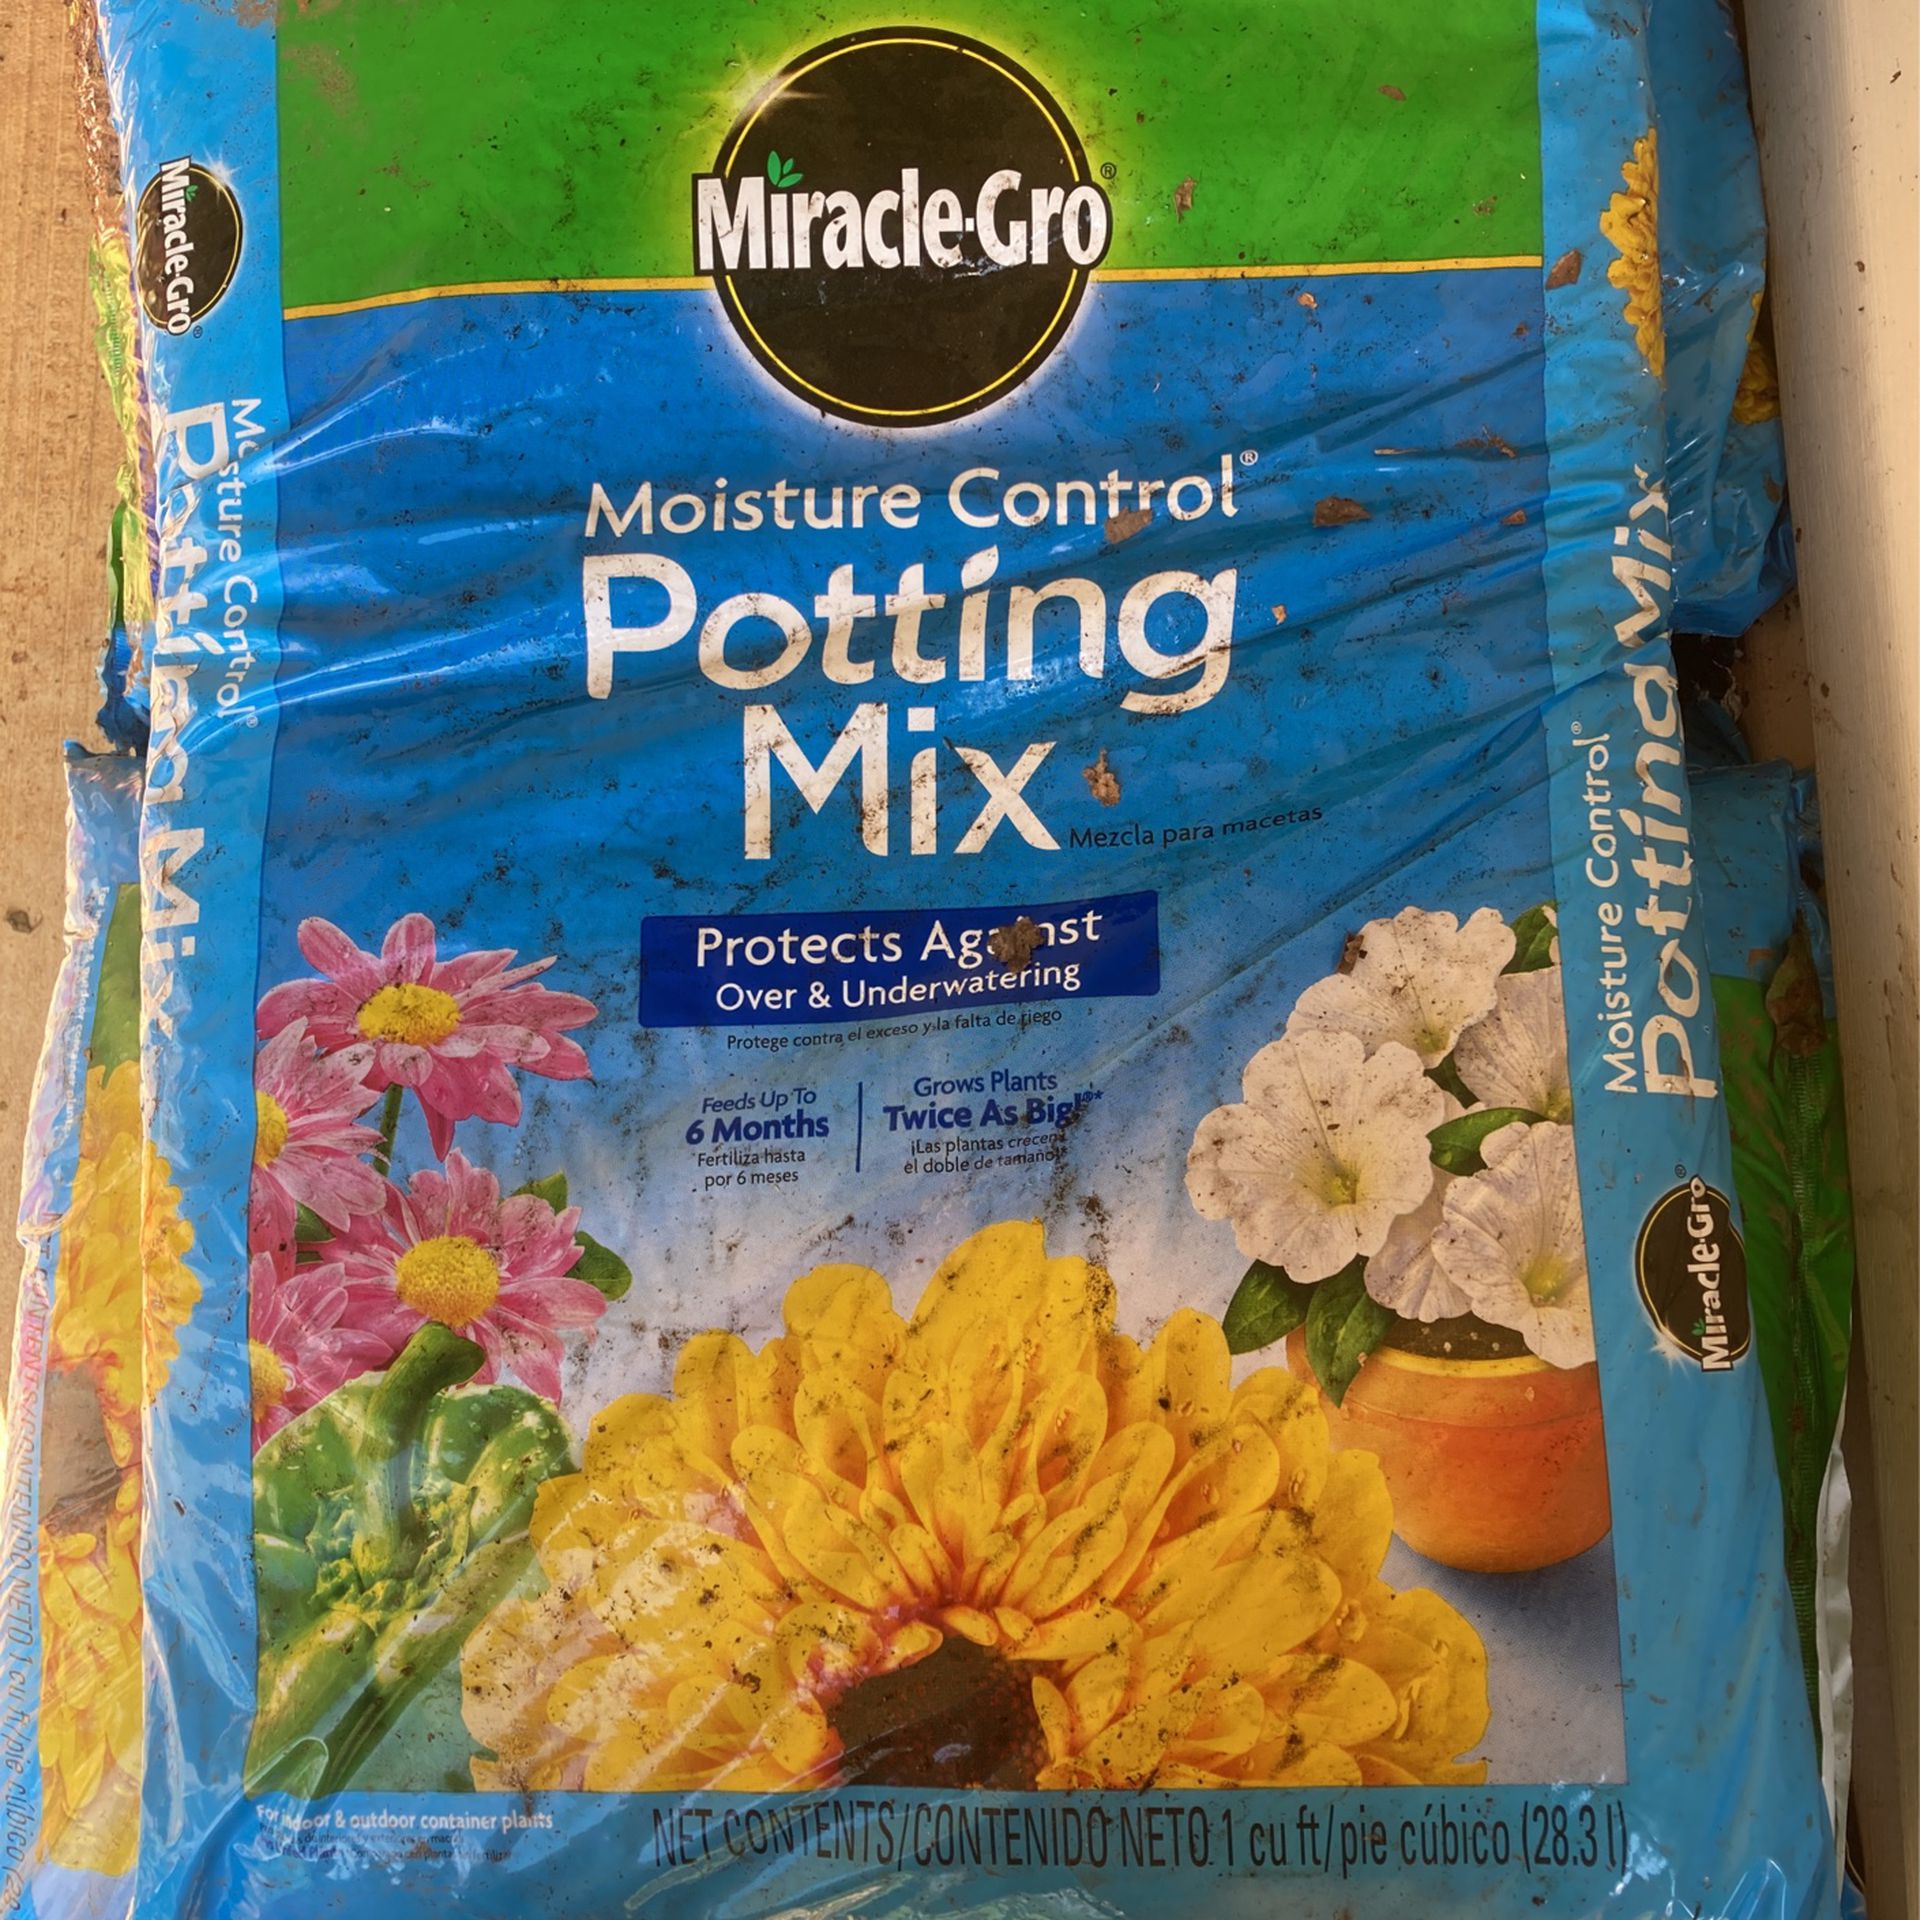 Miracle Grow Potting Mix